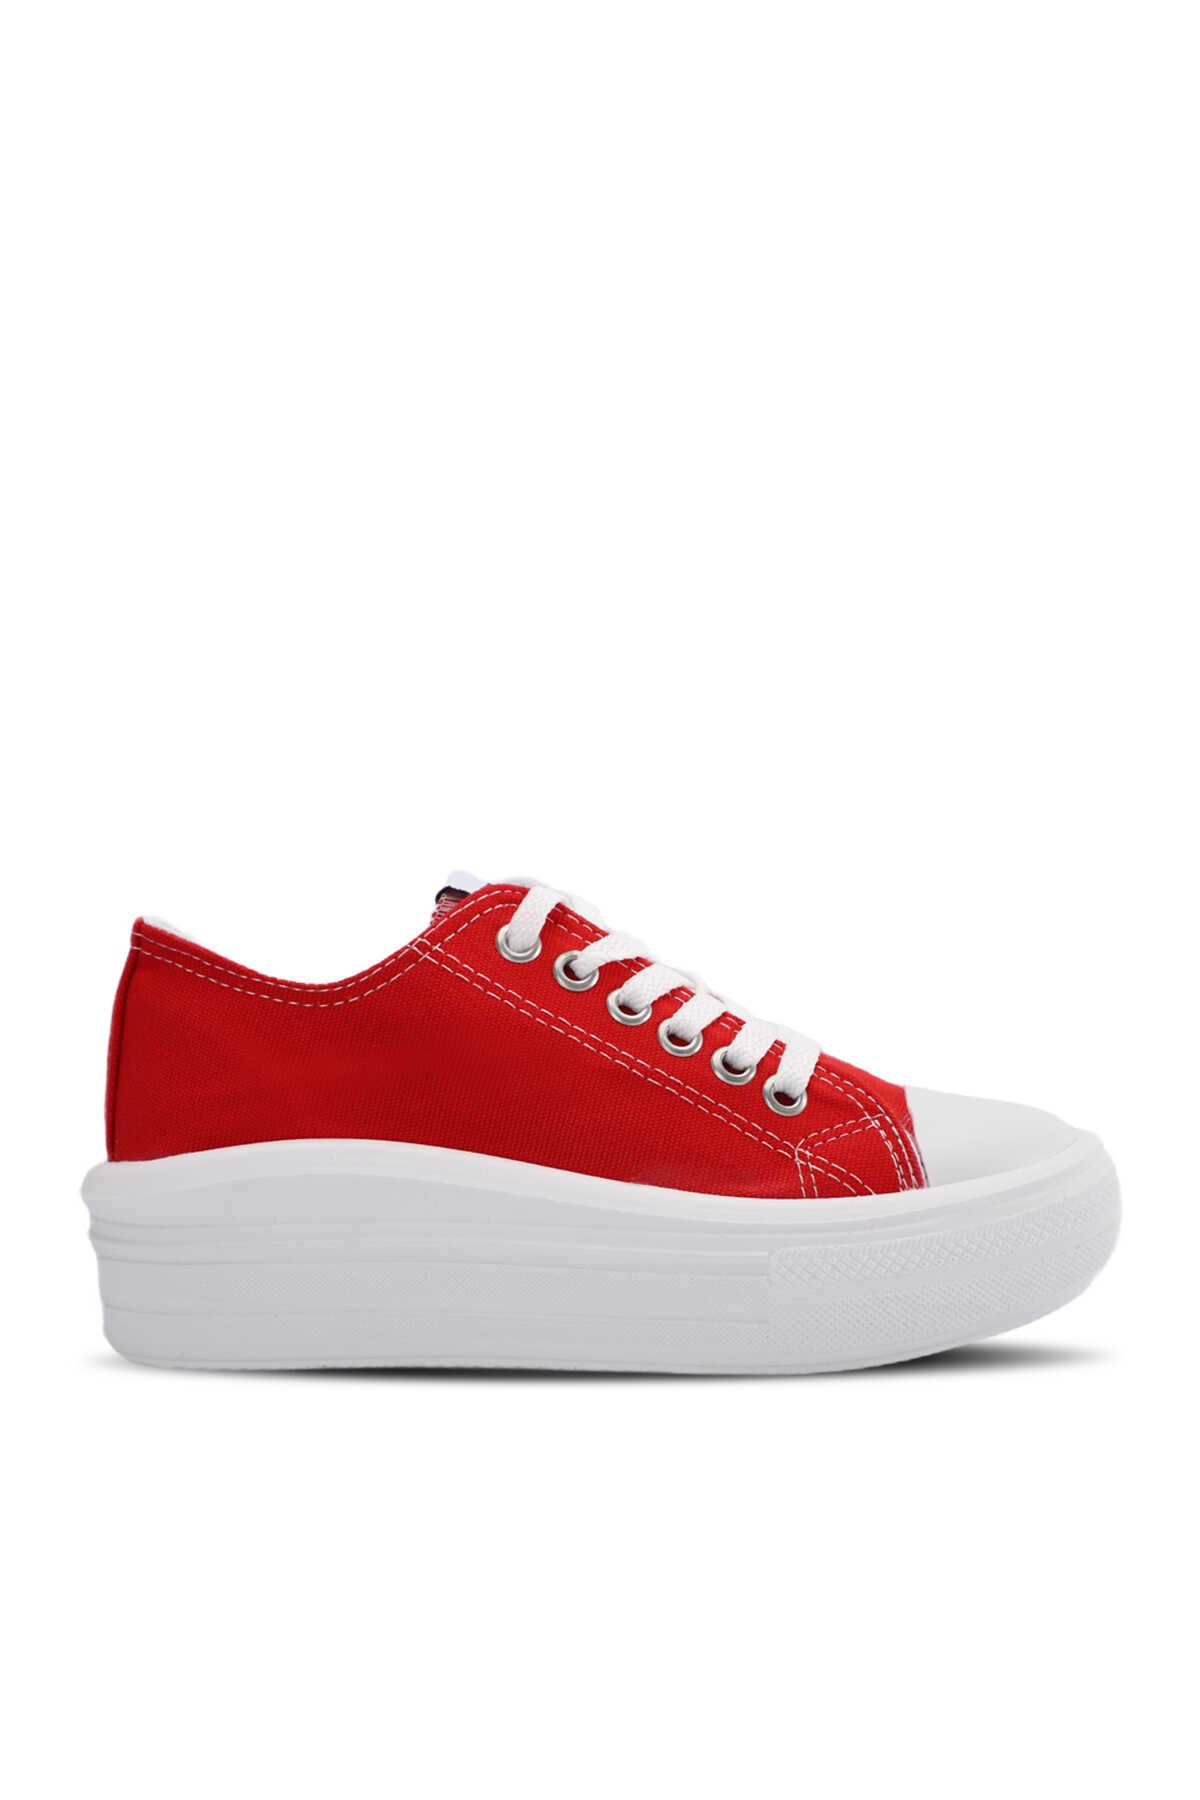 Slazenger - Slazenger SUN Sneaker Kadın Ayakkabı Kırmızı